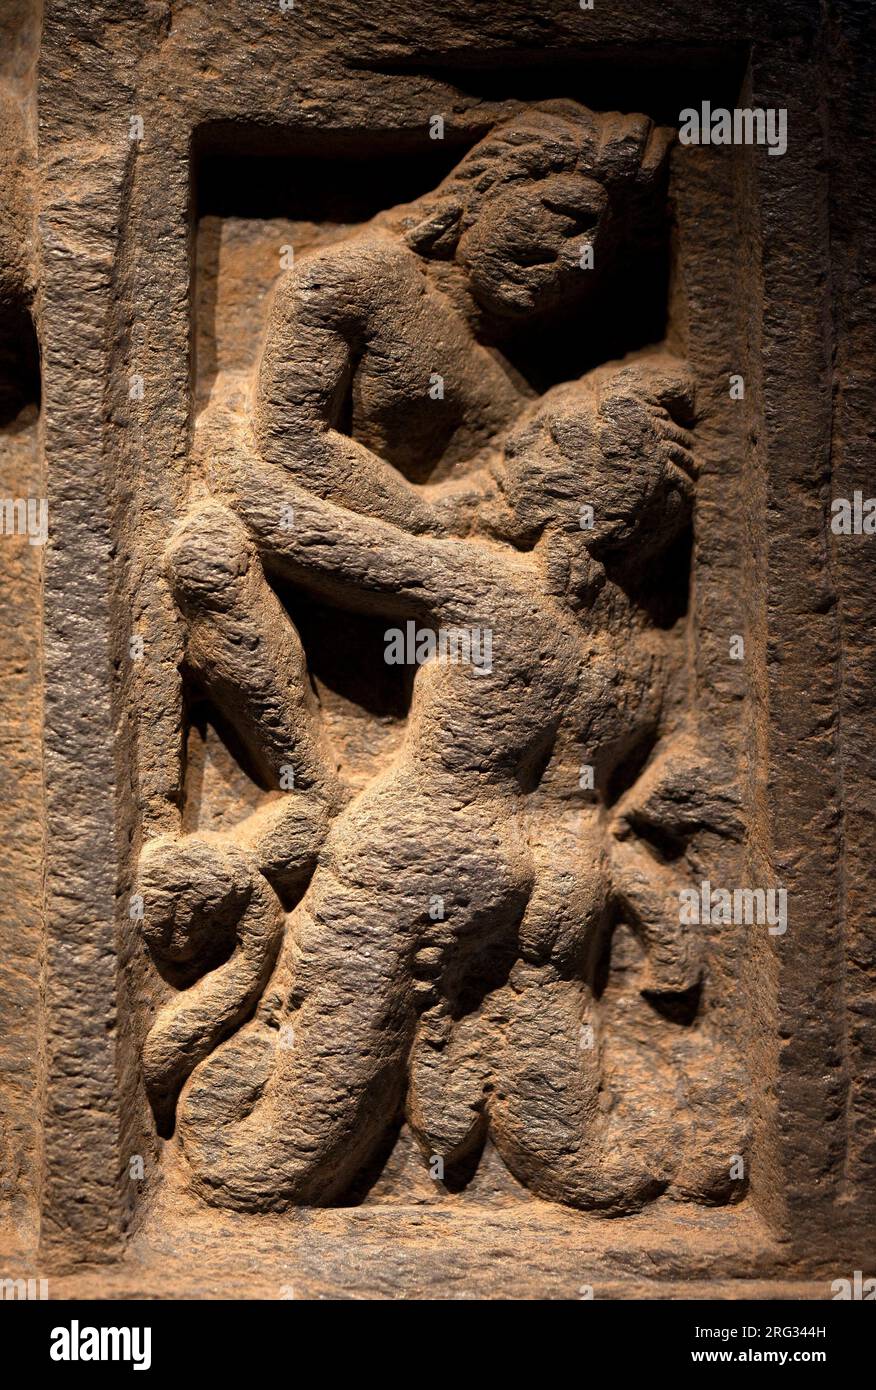 Triton. Bas relief sculpte, art du Gandhara (Pakistan), 2e-3e siecle. Musee National de Coree, Seoul (Coree du Sud). Stock Photo